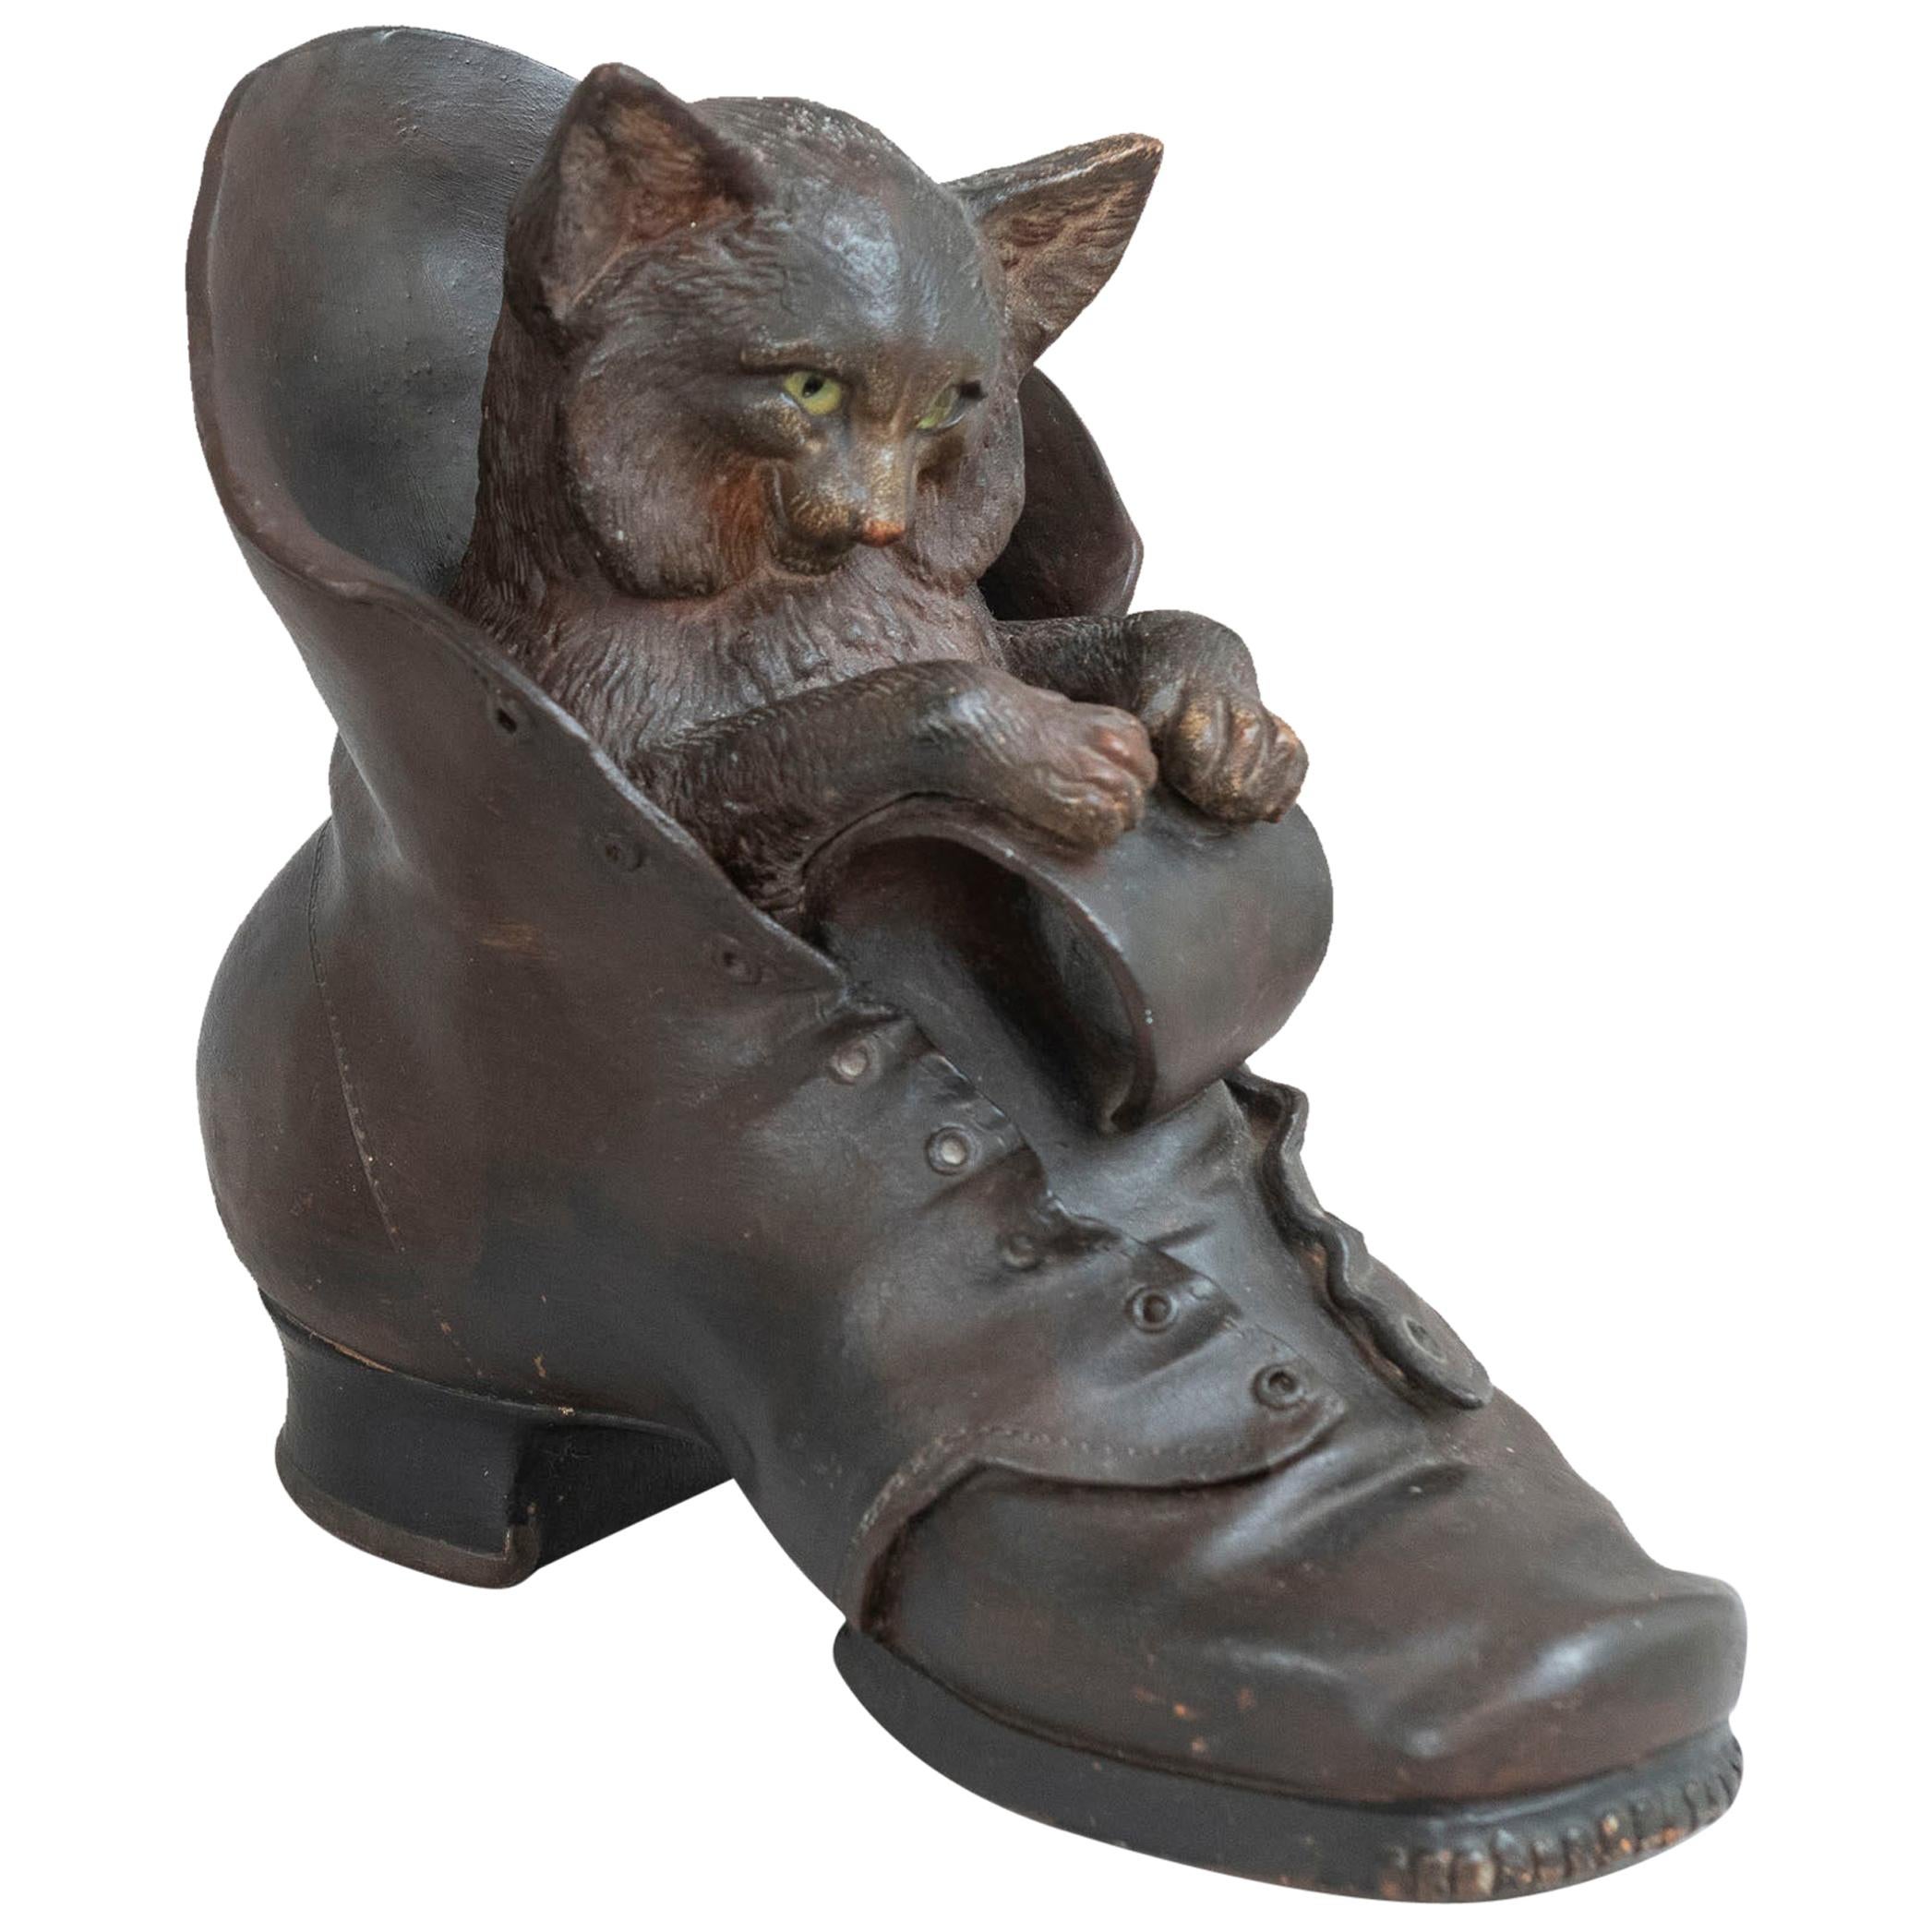 Terracotta Playful Cat in a Shoe, Austrian, circa 1890